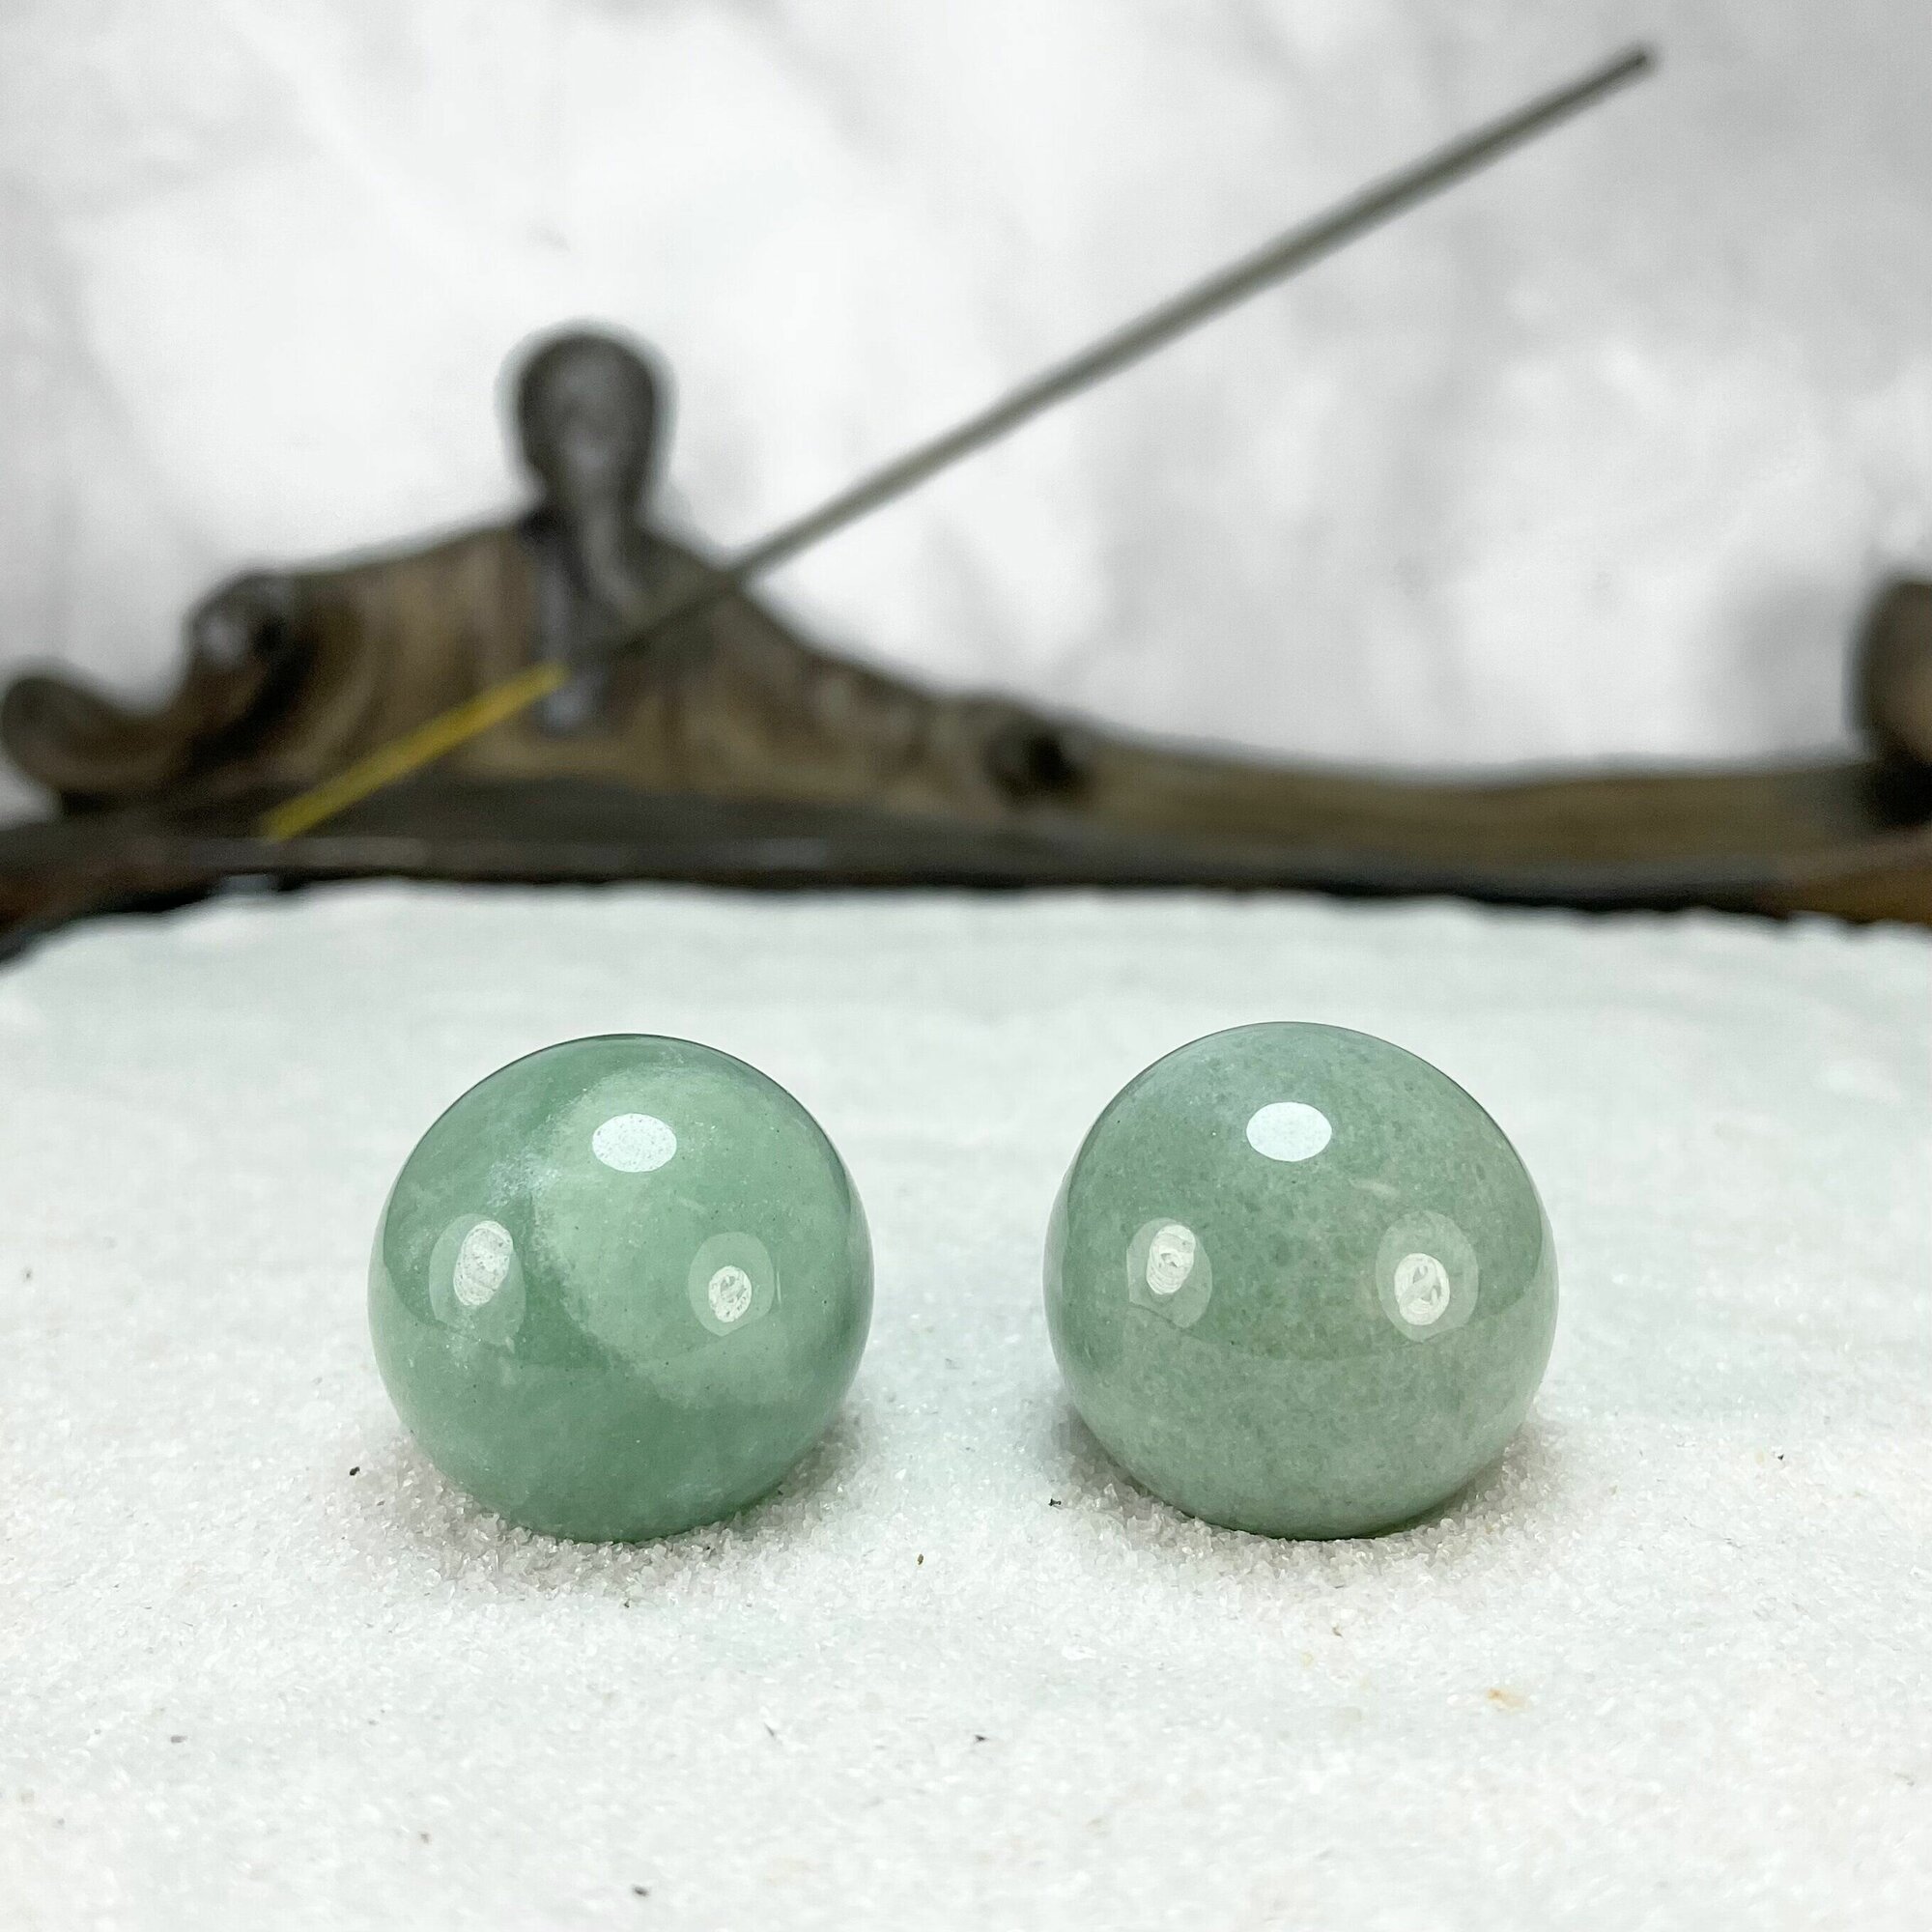 Массажные шары Баодинг для здоровья и медитации, антистресс, из натурального камня Нефрит, диаметр 2 см, 2 шт